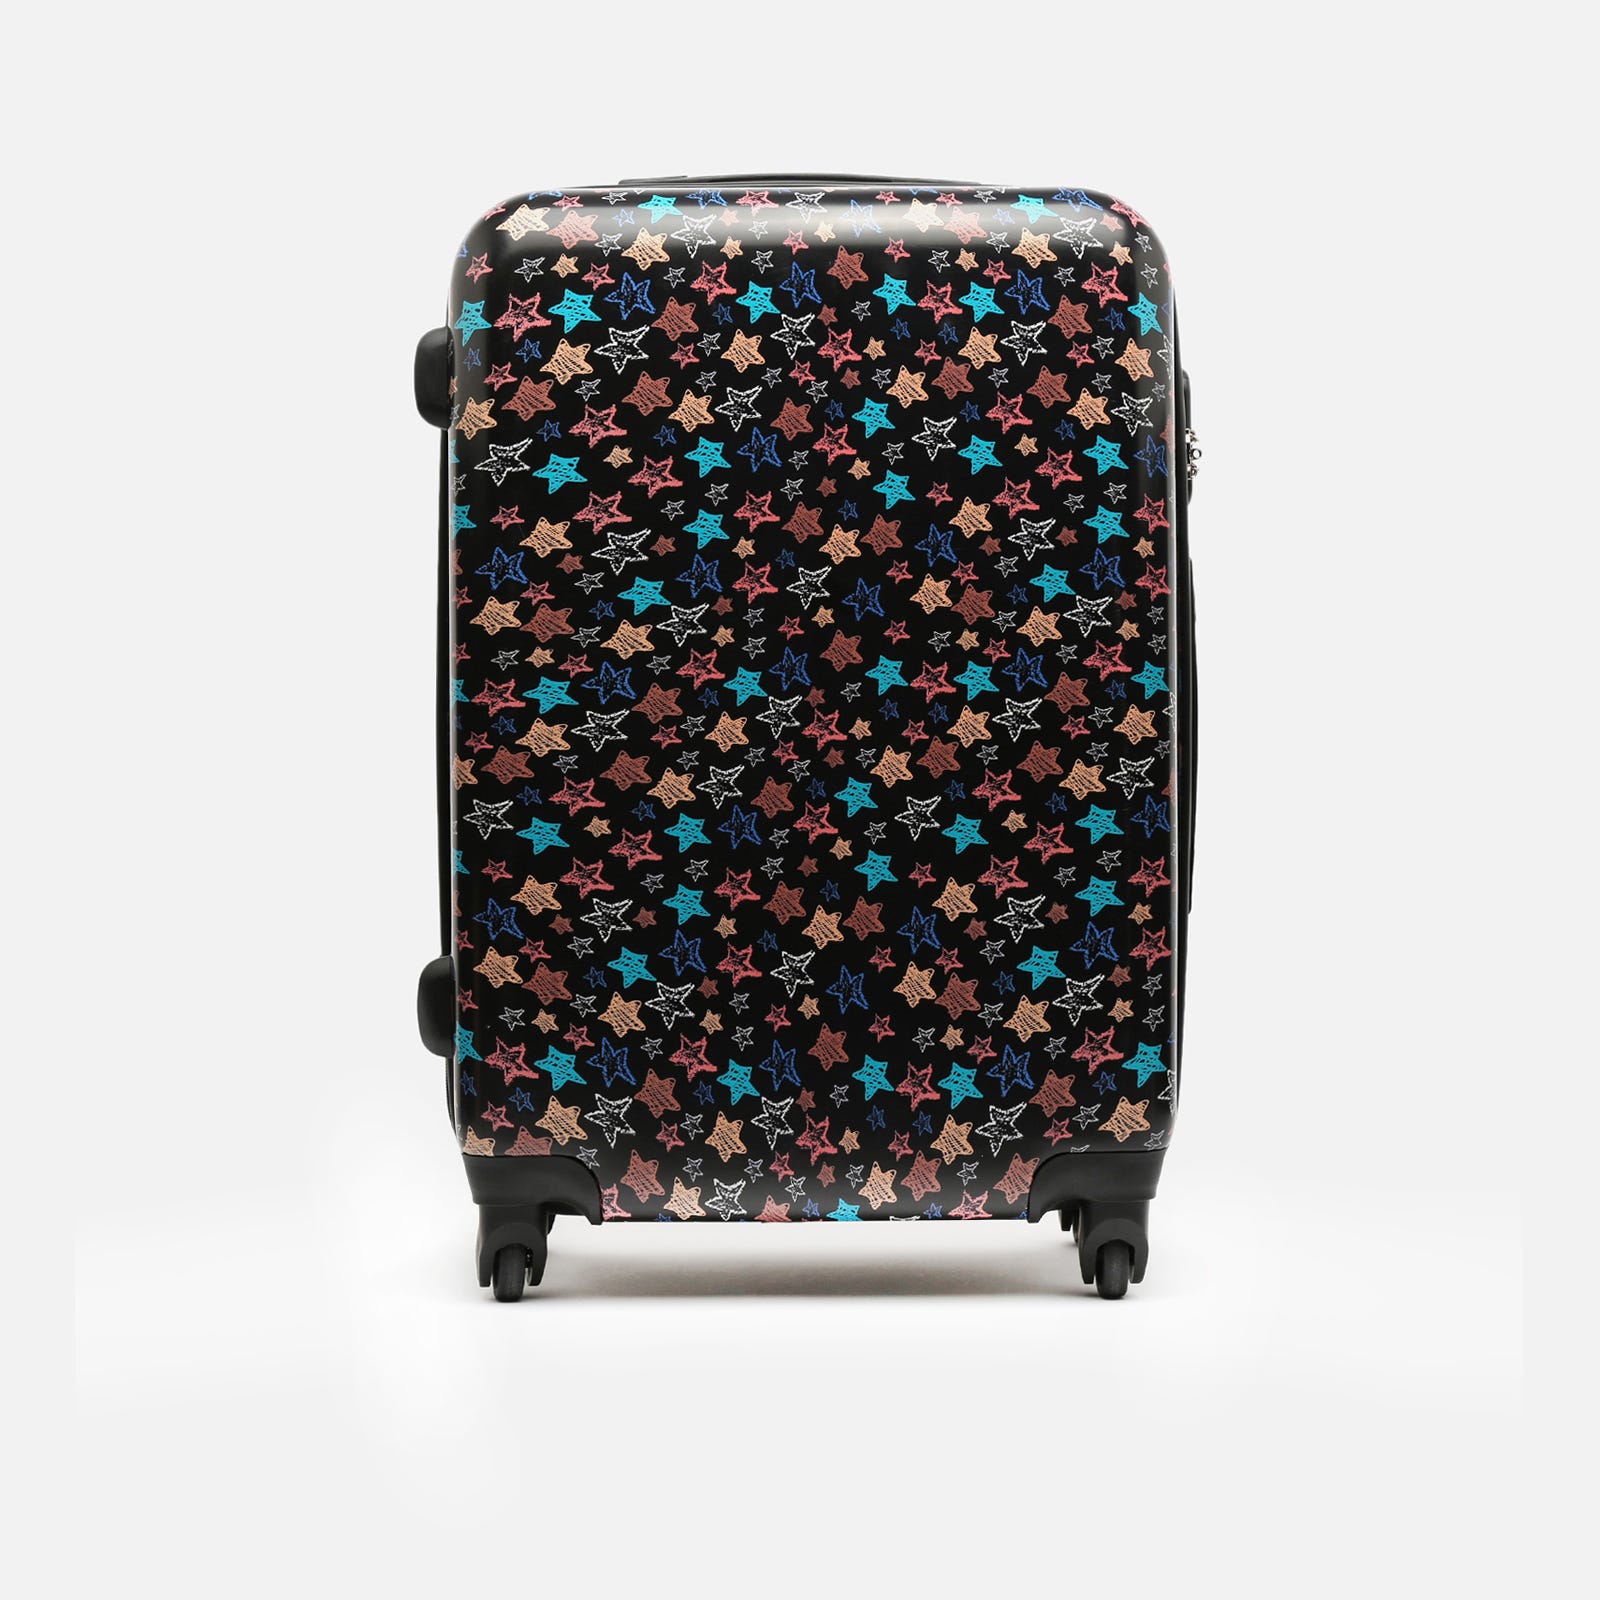 Estrella medium suitcase